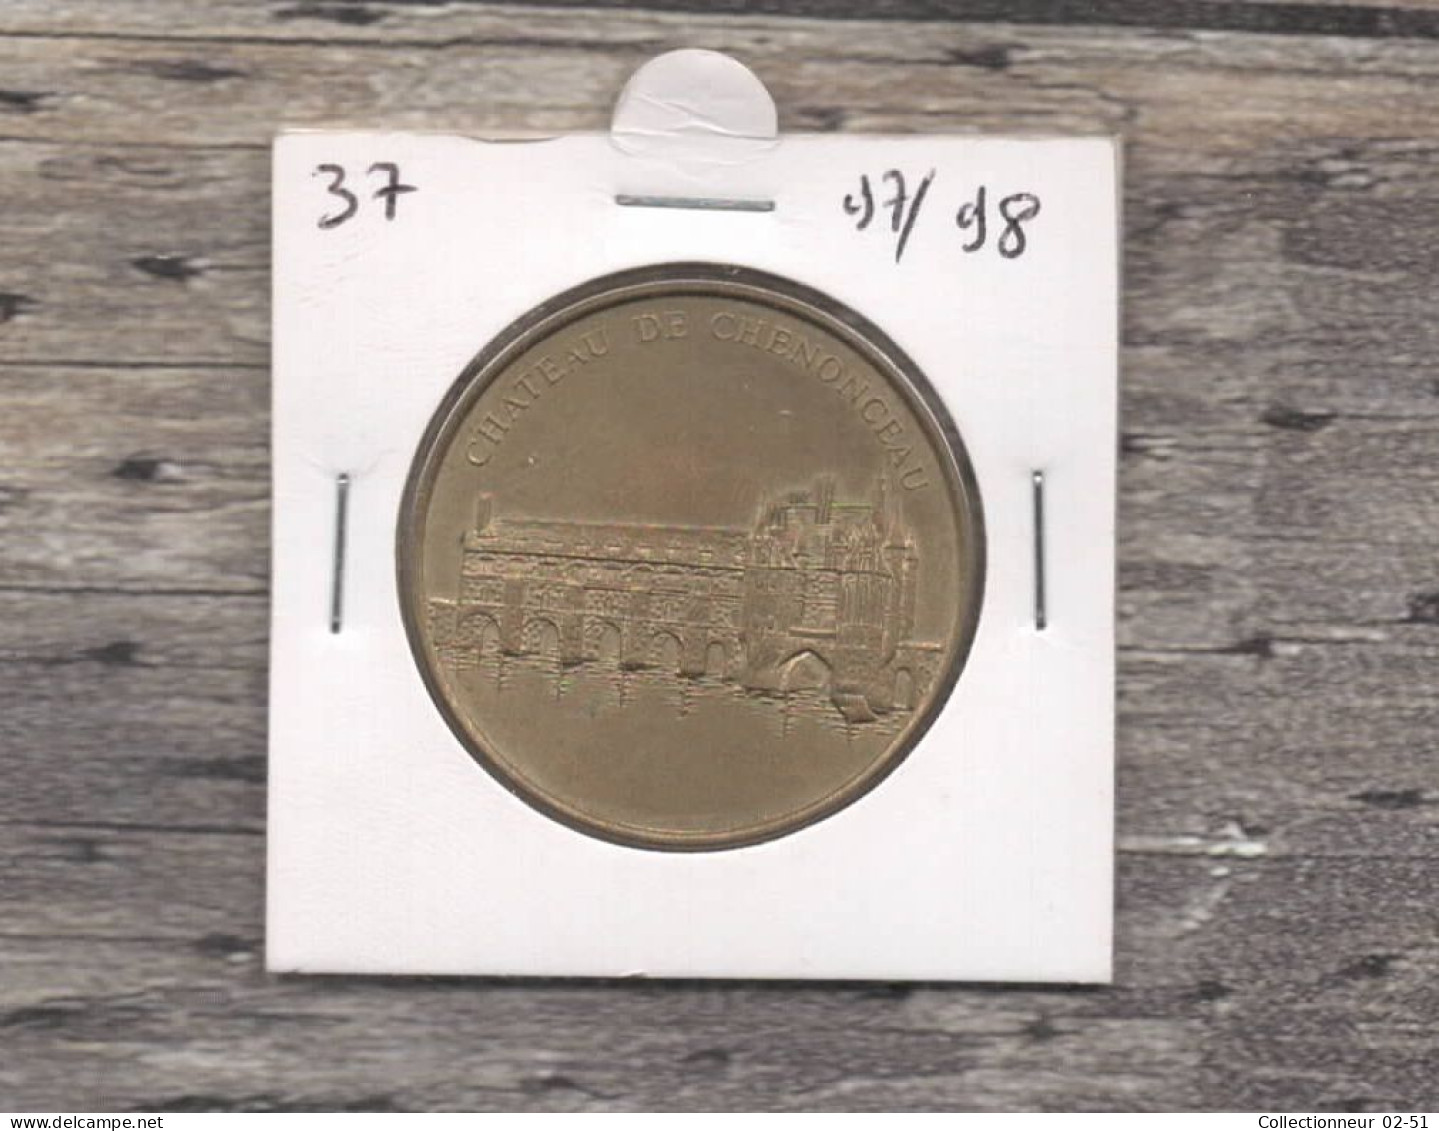 Monnaie De Paris : Château De Chenonceau - 1998 - Zonder Datum